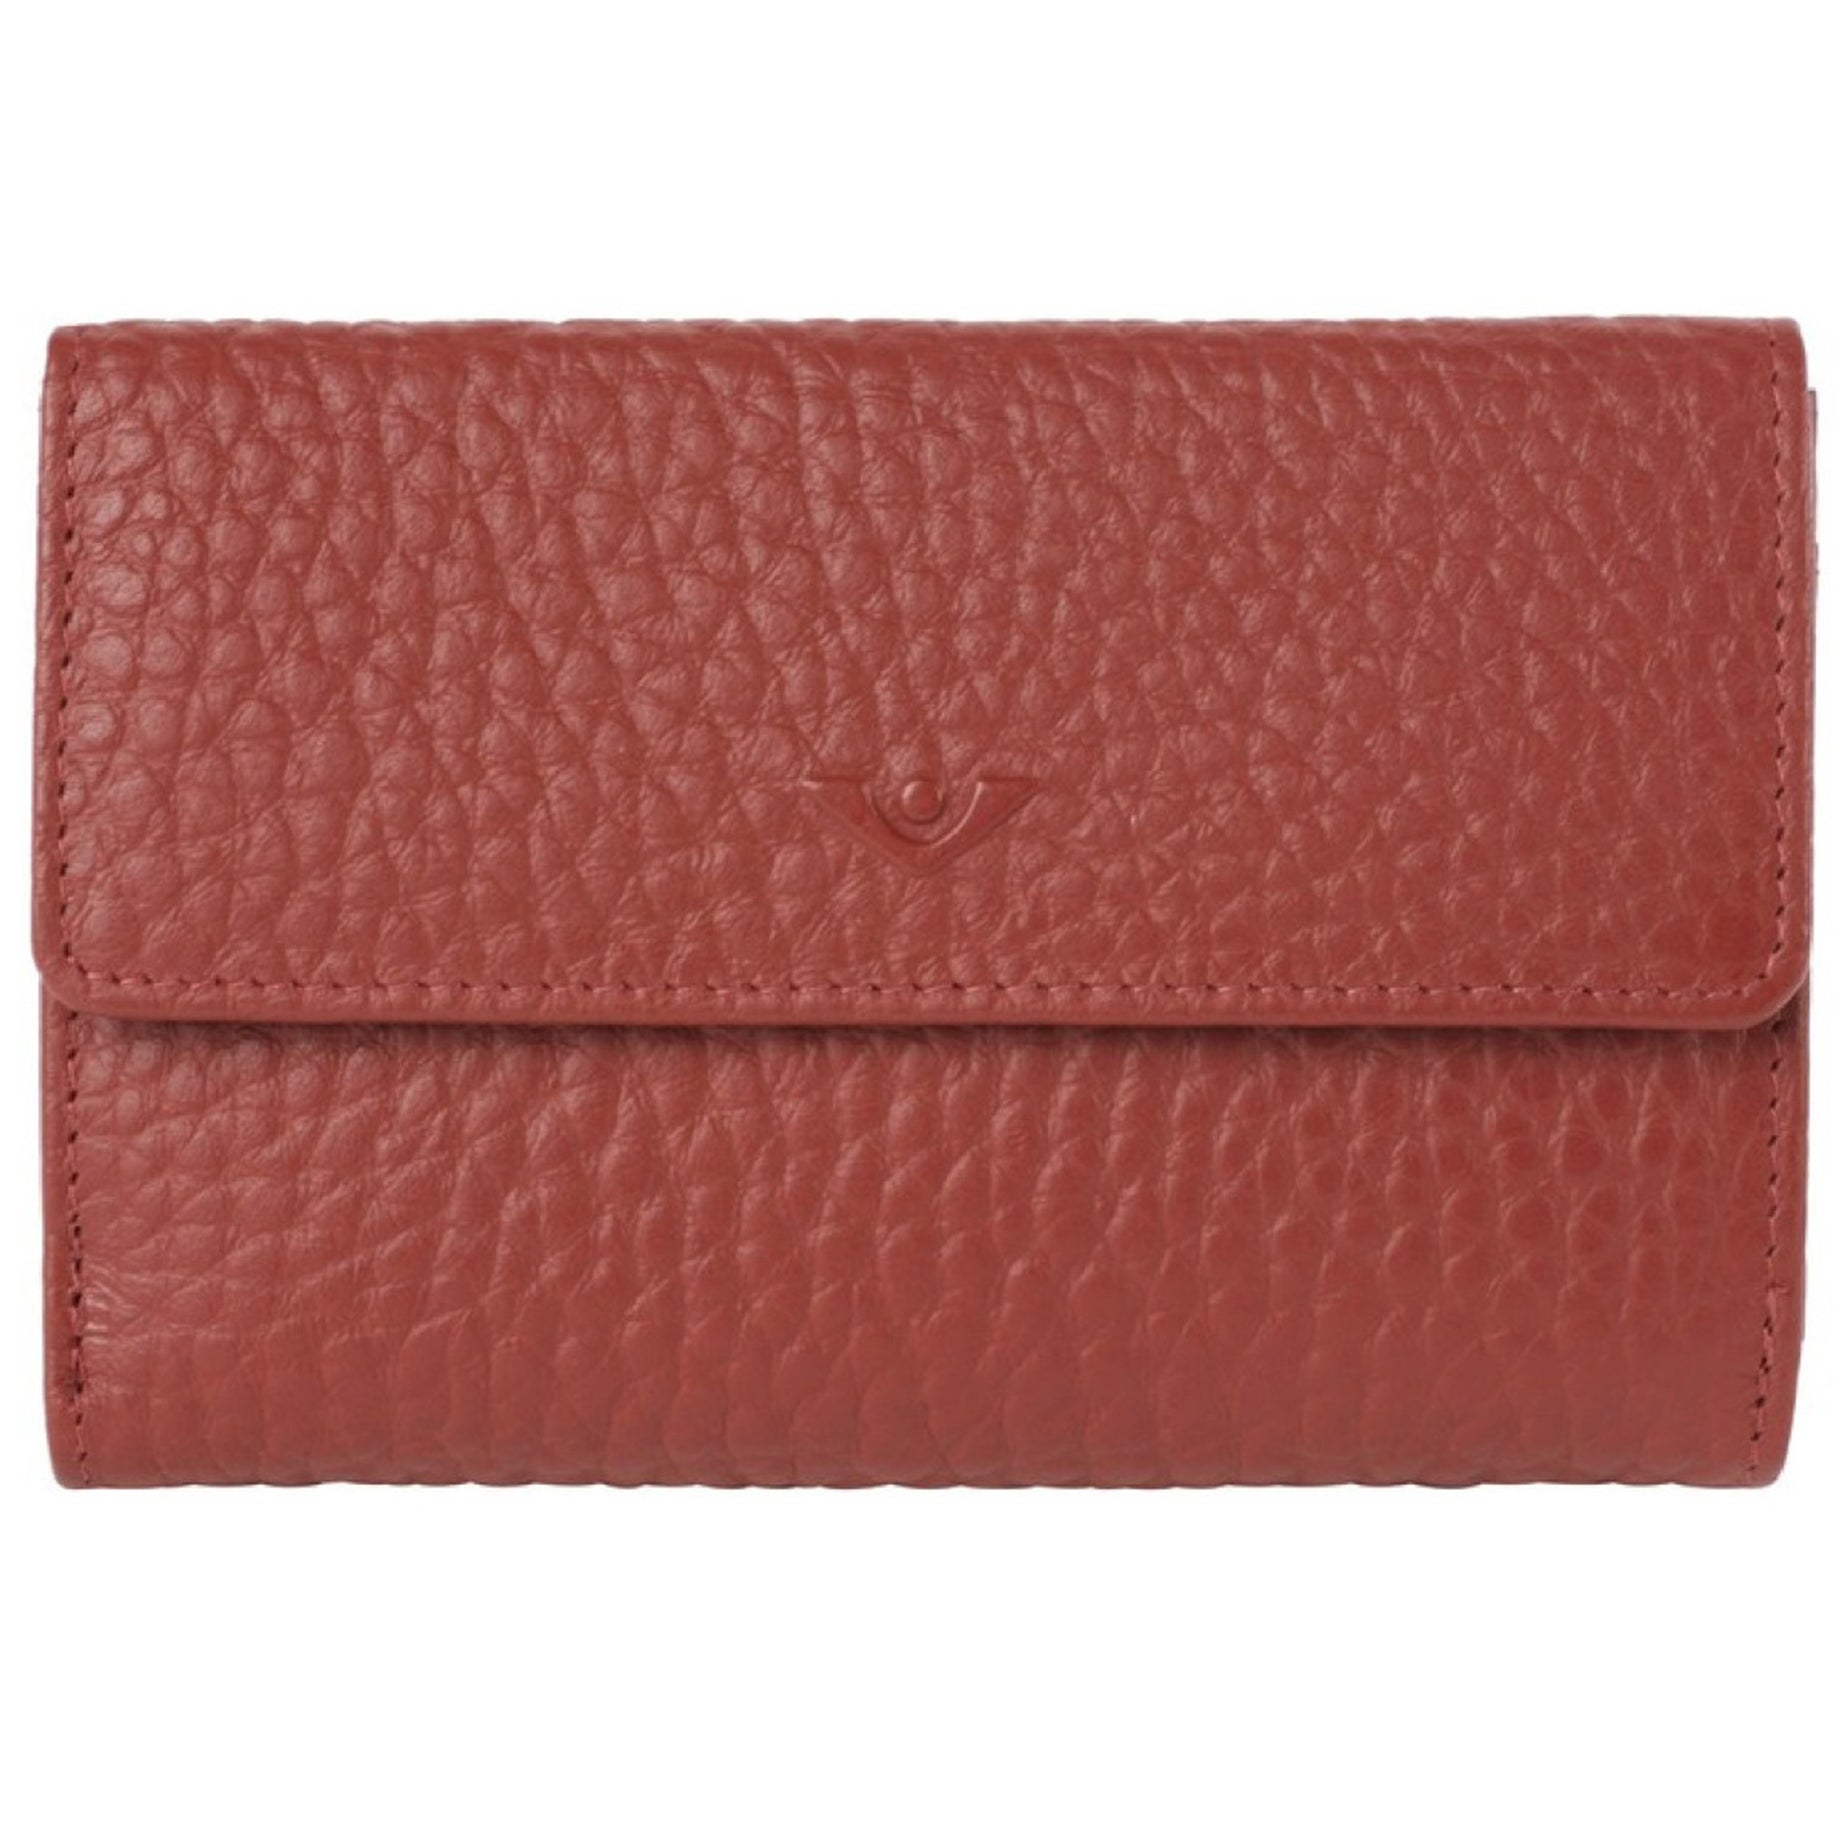 VOi-Design Hirsch Brenna women's wallet 15 cm - garnet